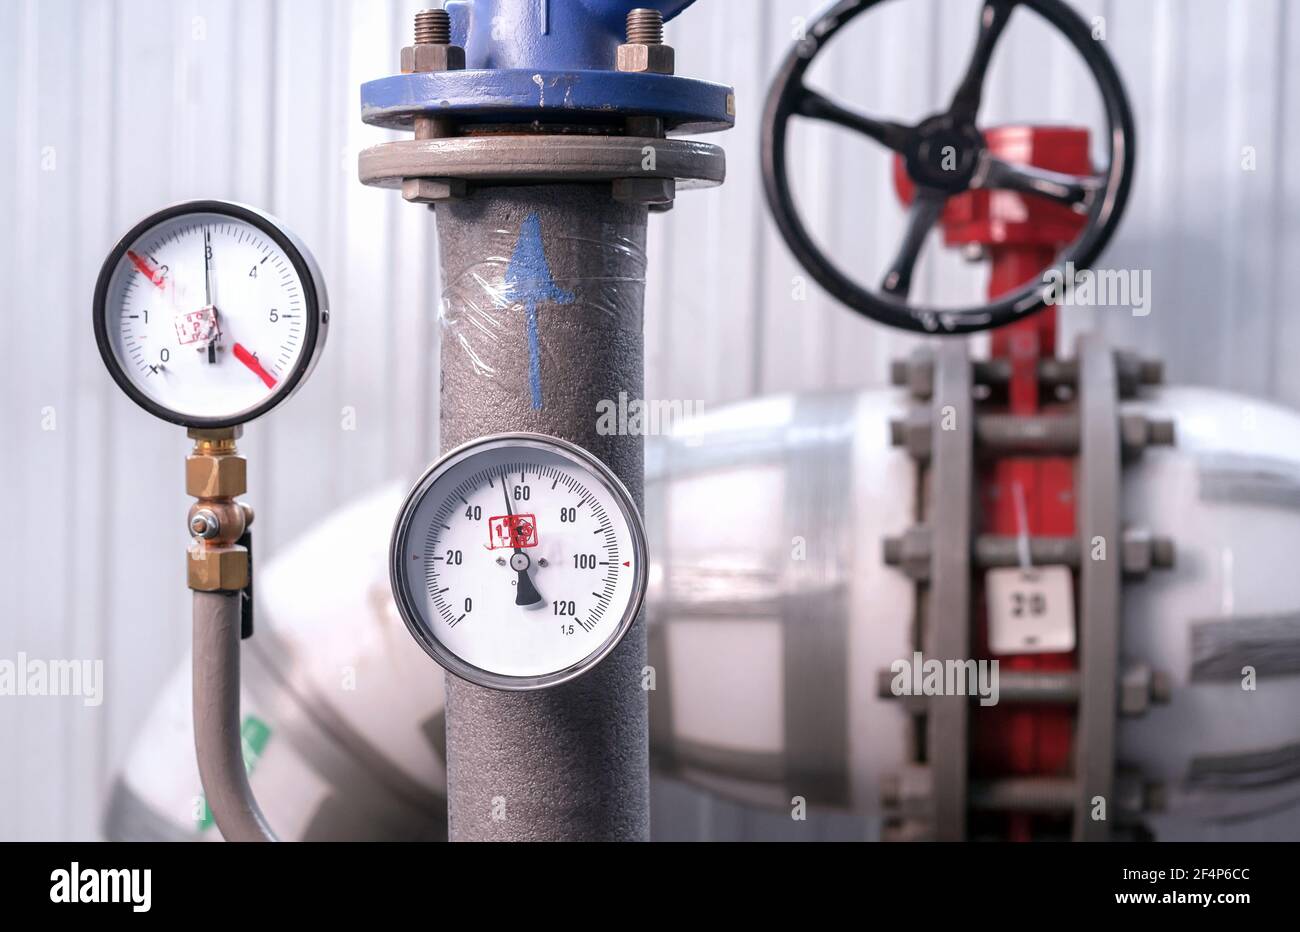 Manomètre pour mesurer la pression de l'eau. Équipement de chaudière à gaz  Photo Stock - Alamy